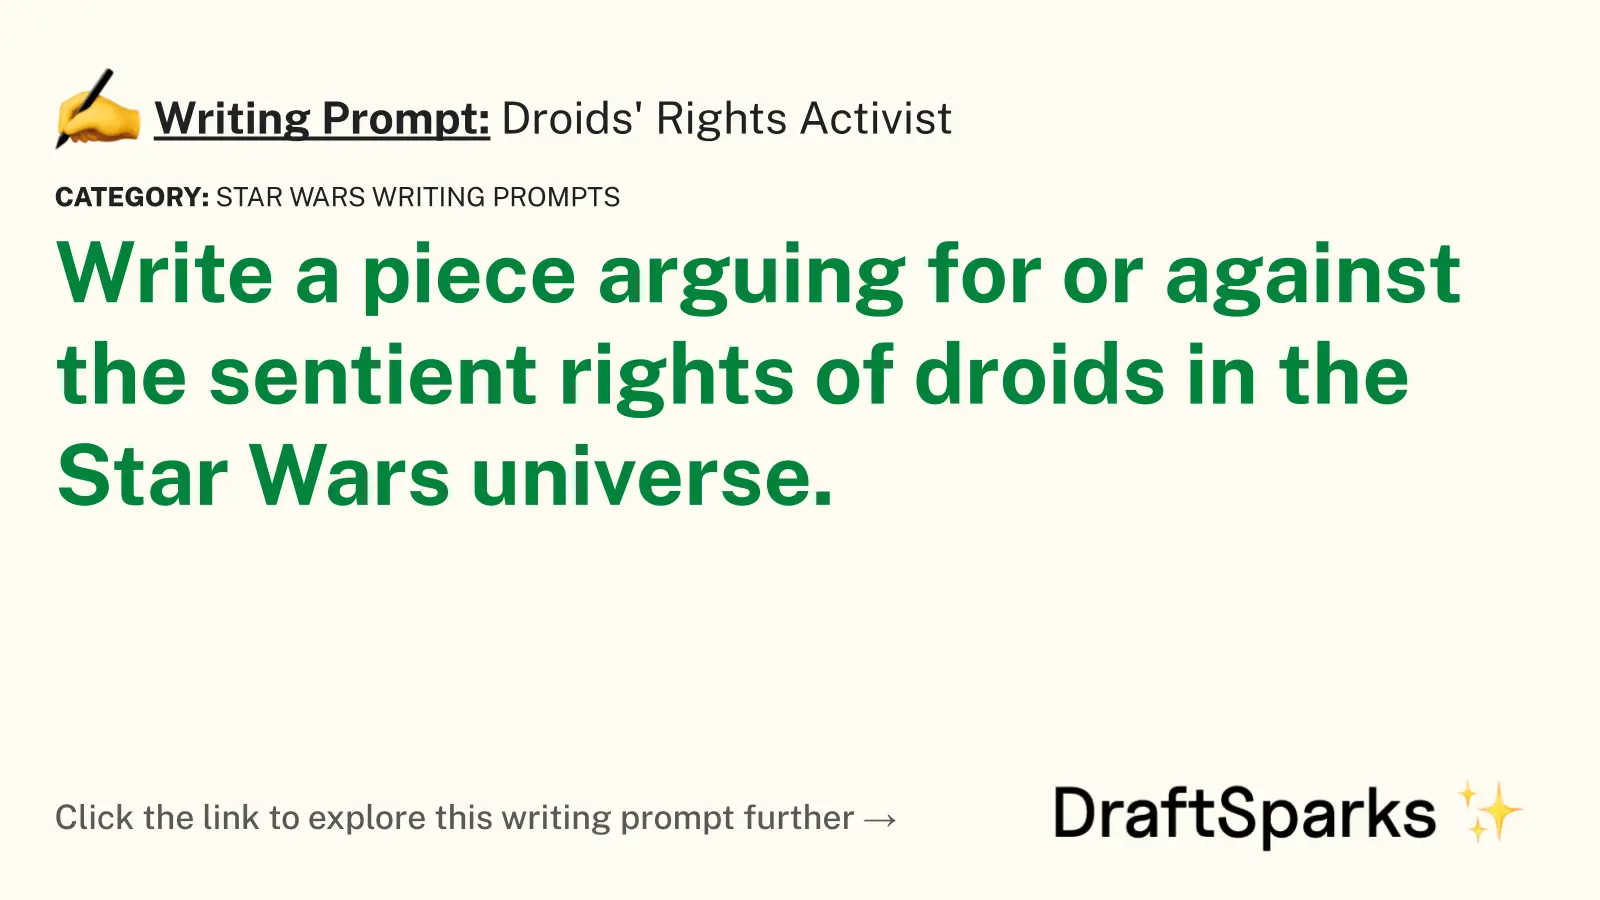 Droids’ Rights Activist